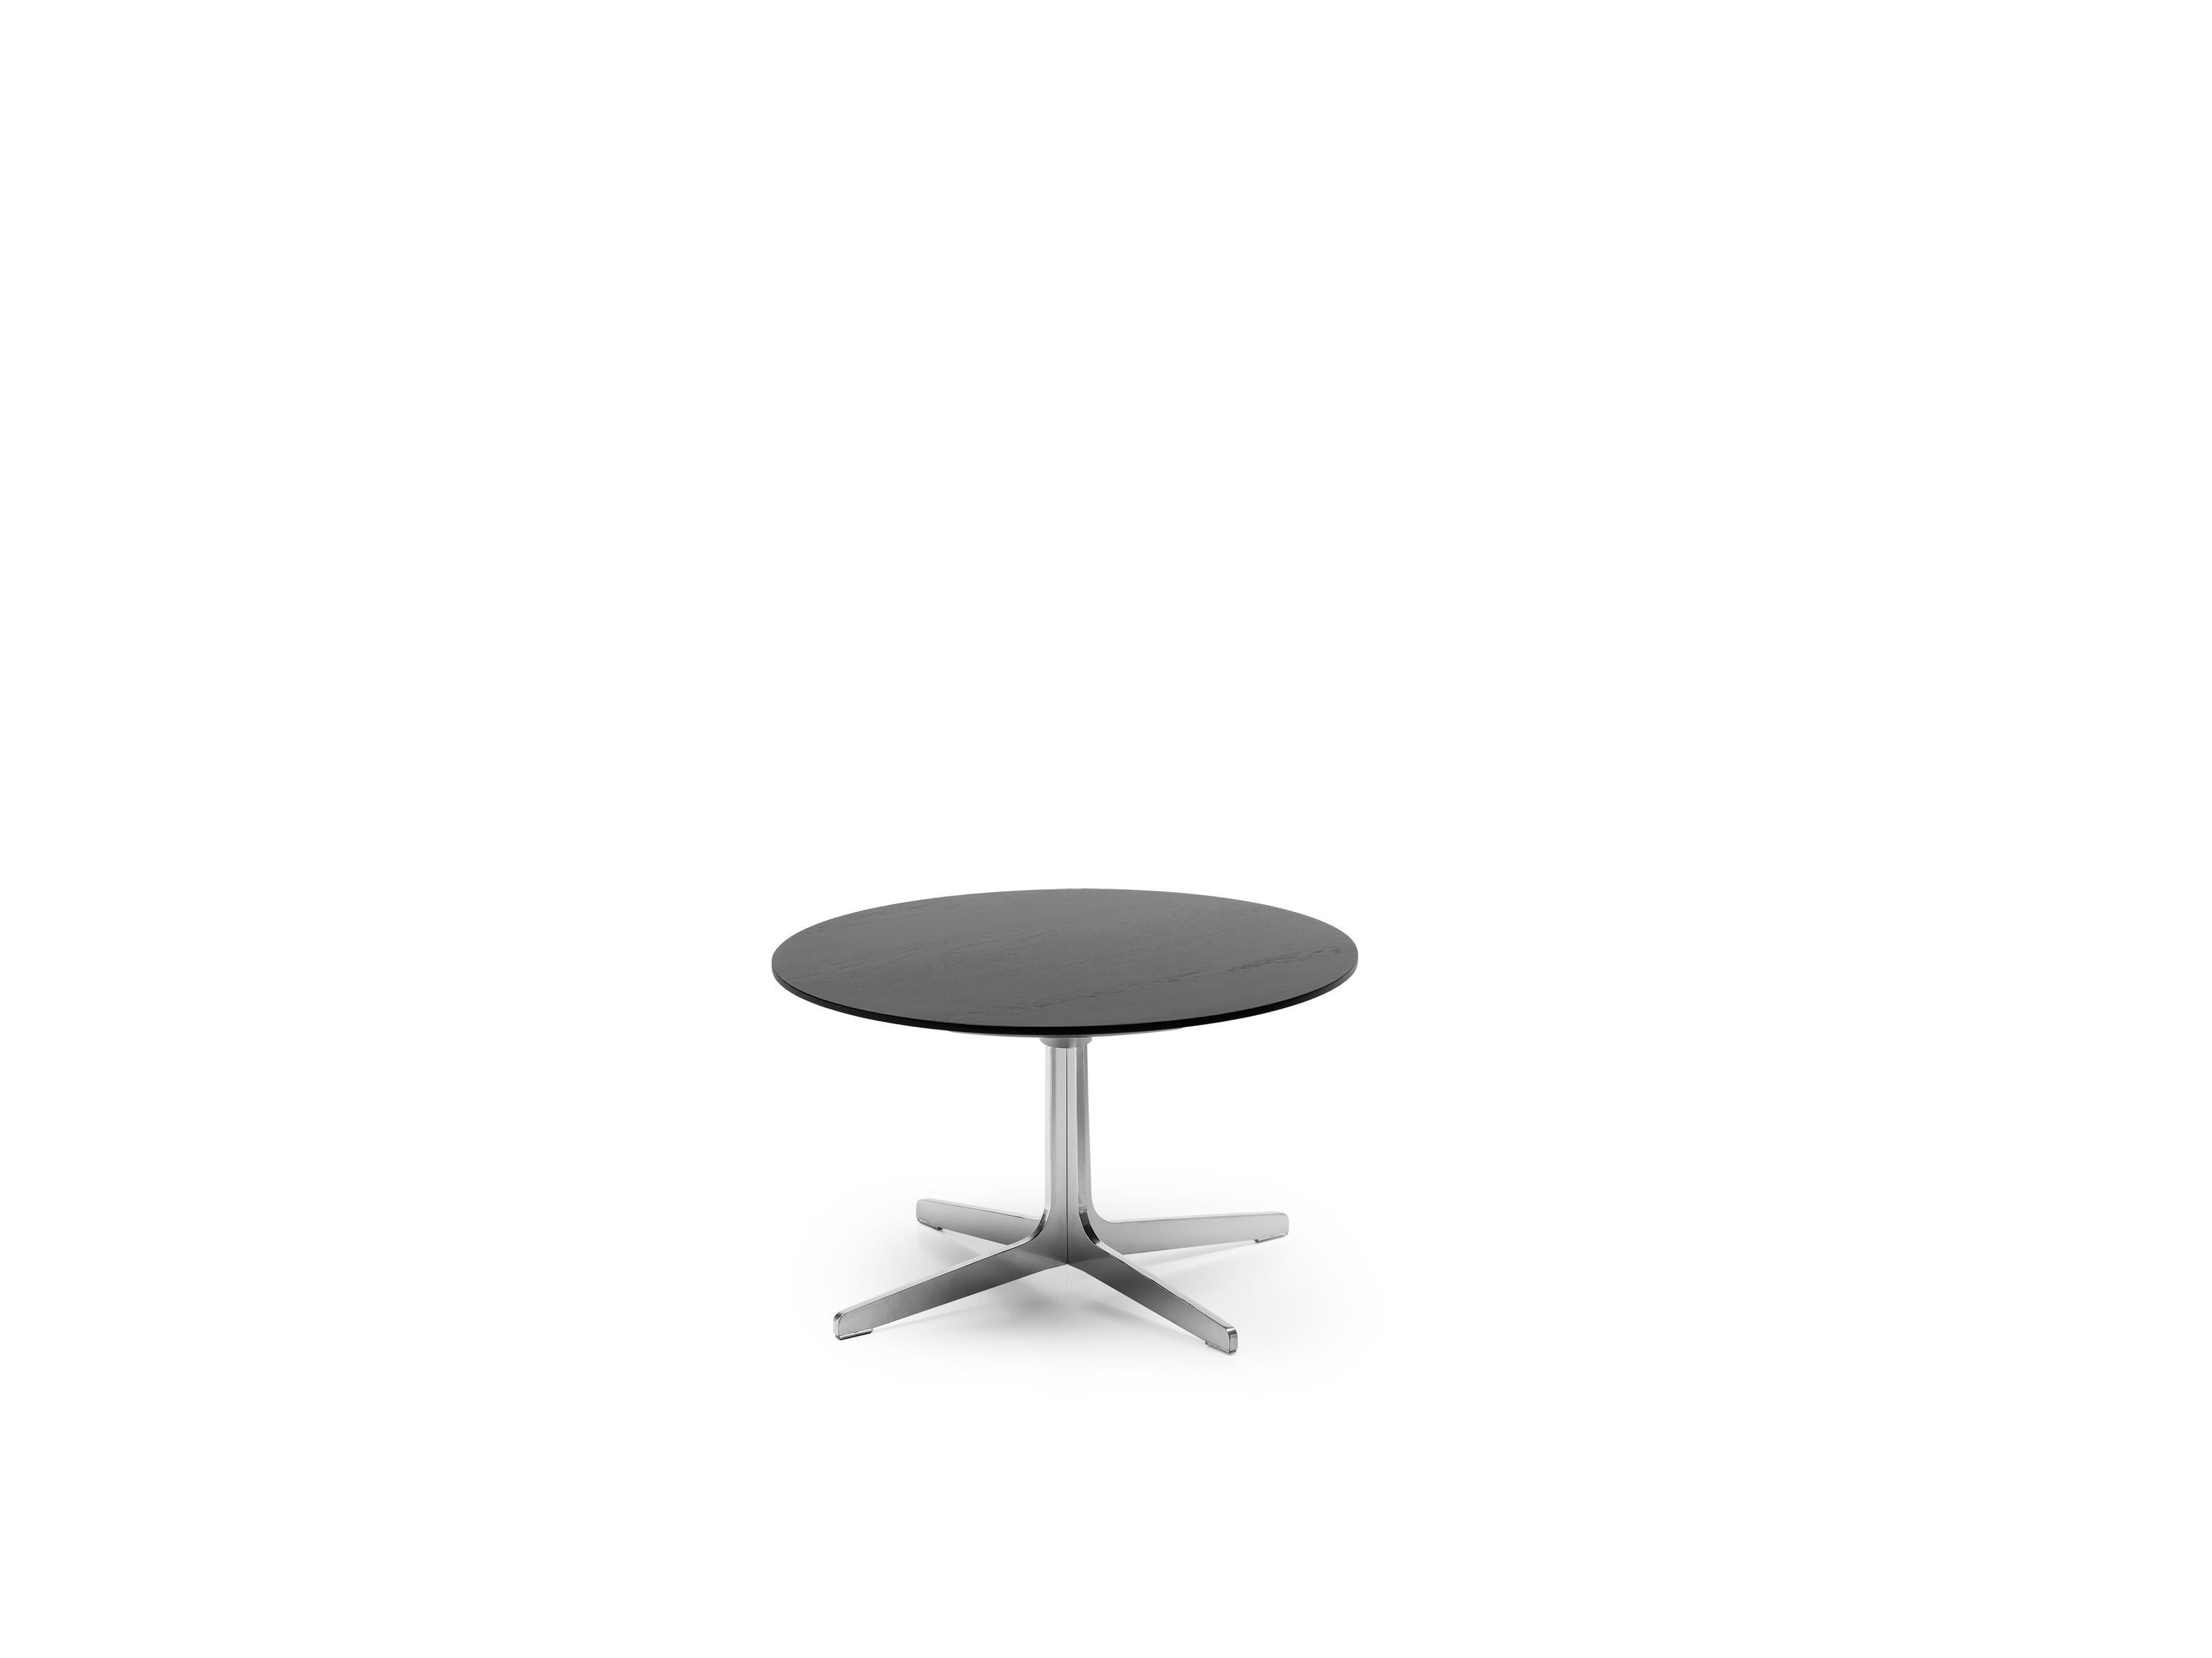 DS-144 Lounge-Tisch von De Sede
Design: Werner Aisslinger
Abmessungen: T 50 x B 61 x H 37 cm
MATERIALIEN: Stahl hochglanzverchromt, Eiche Nero

Die Preise können sich je nach den gewählten Materialien und der Größe ändern. 

Sitzen Sie so, wie Sie